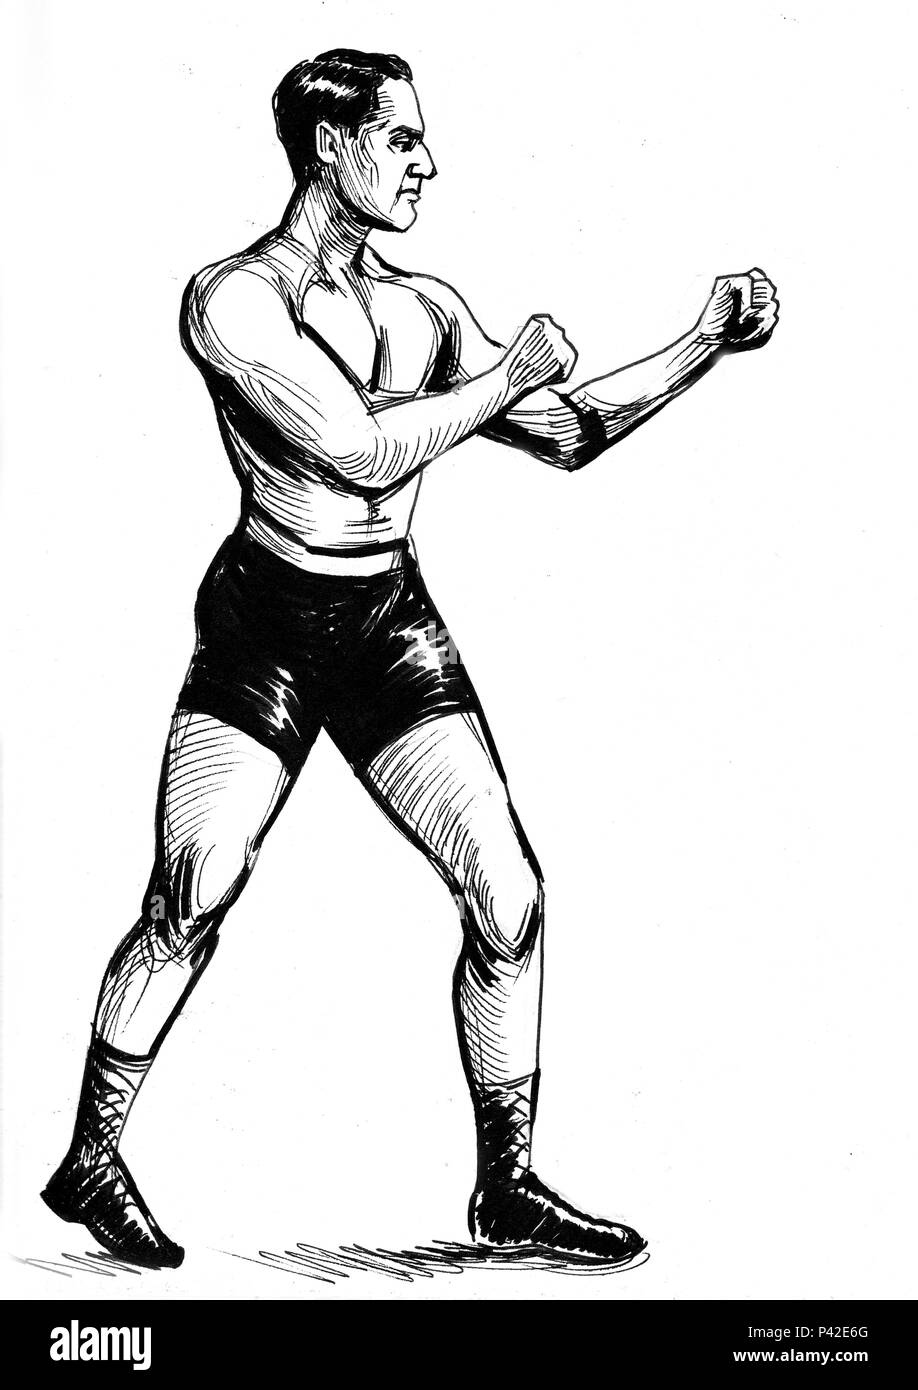 Illustration de boxeur Banque d'images noir et blanc - Alamy